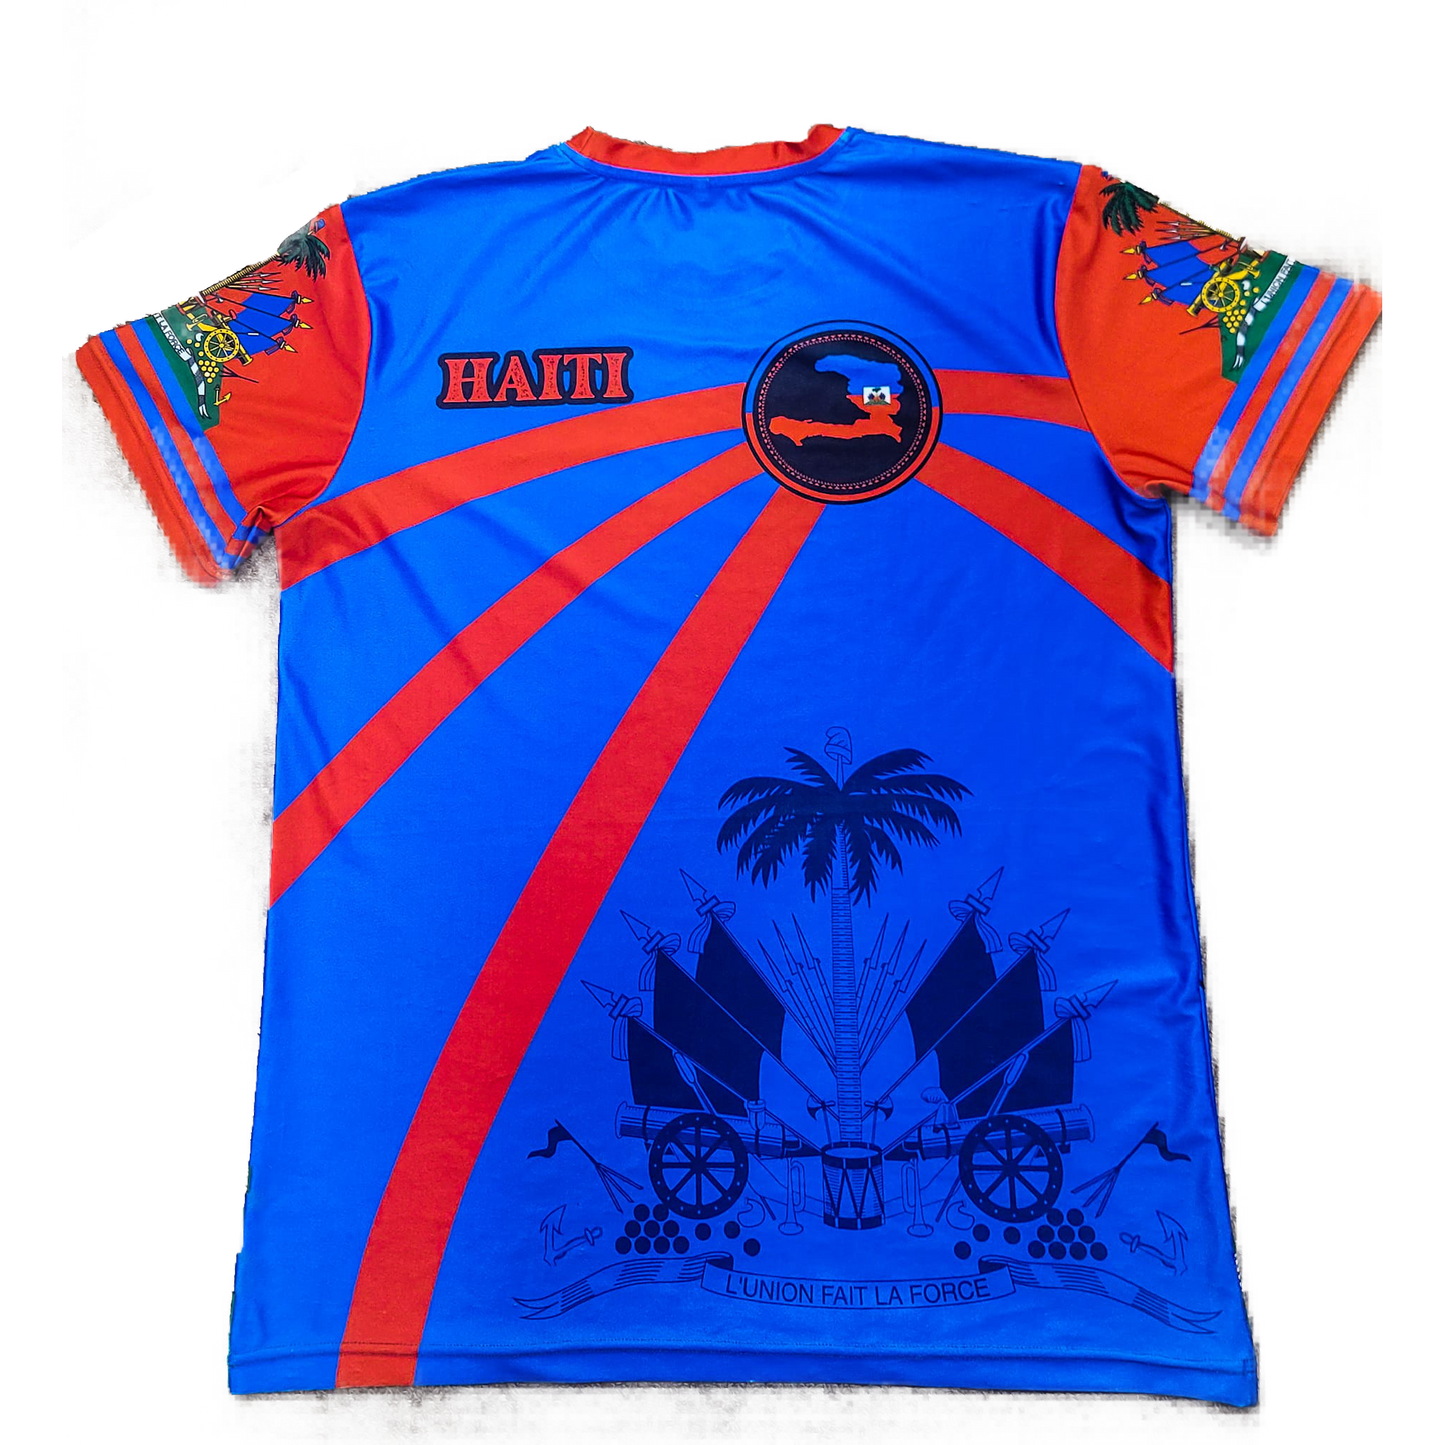 Haiti Island Tee